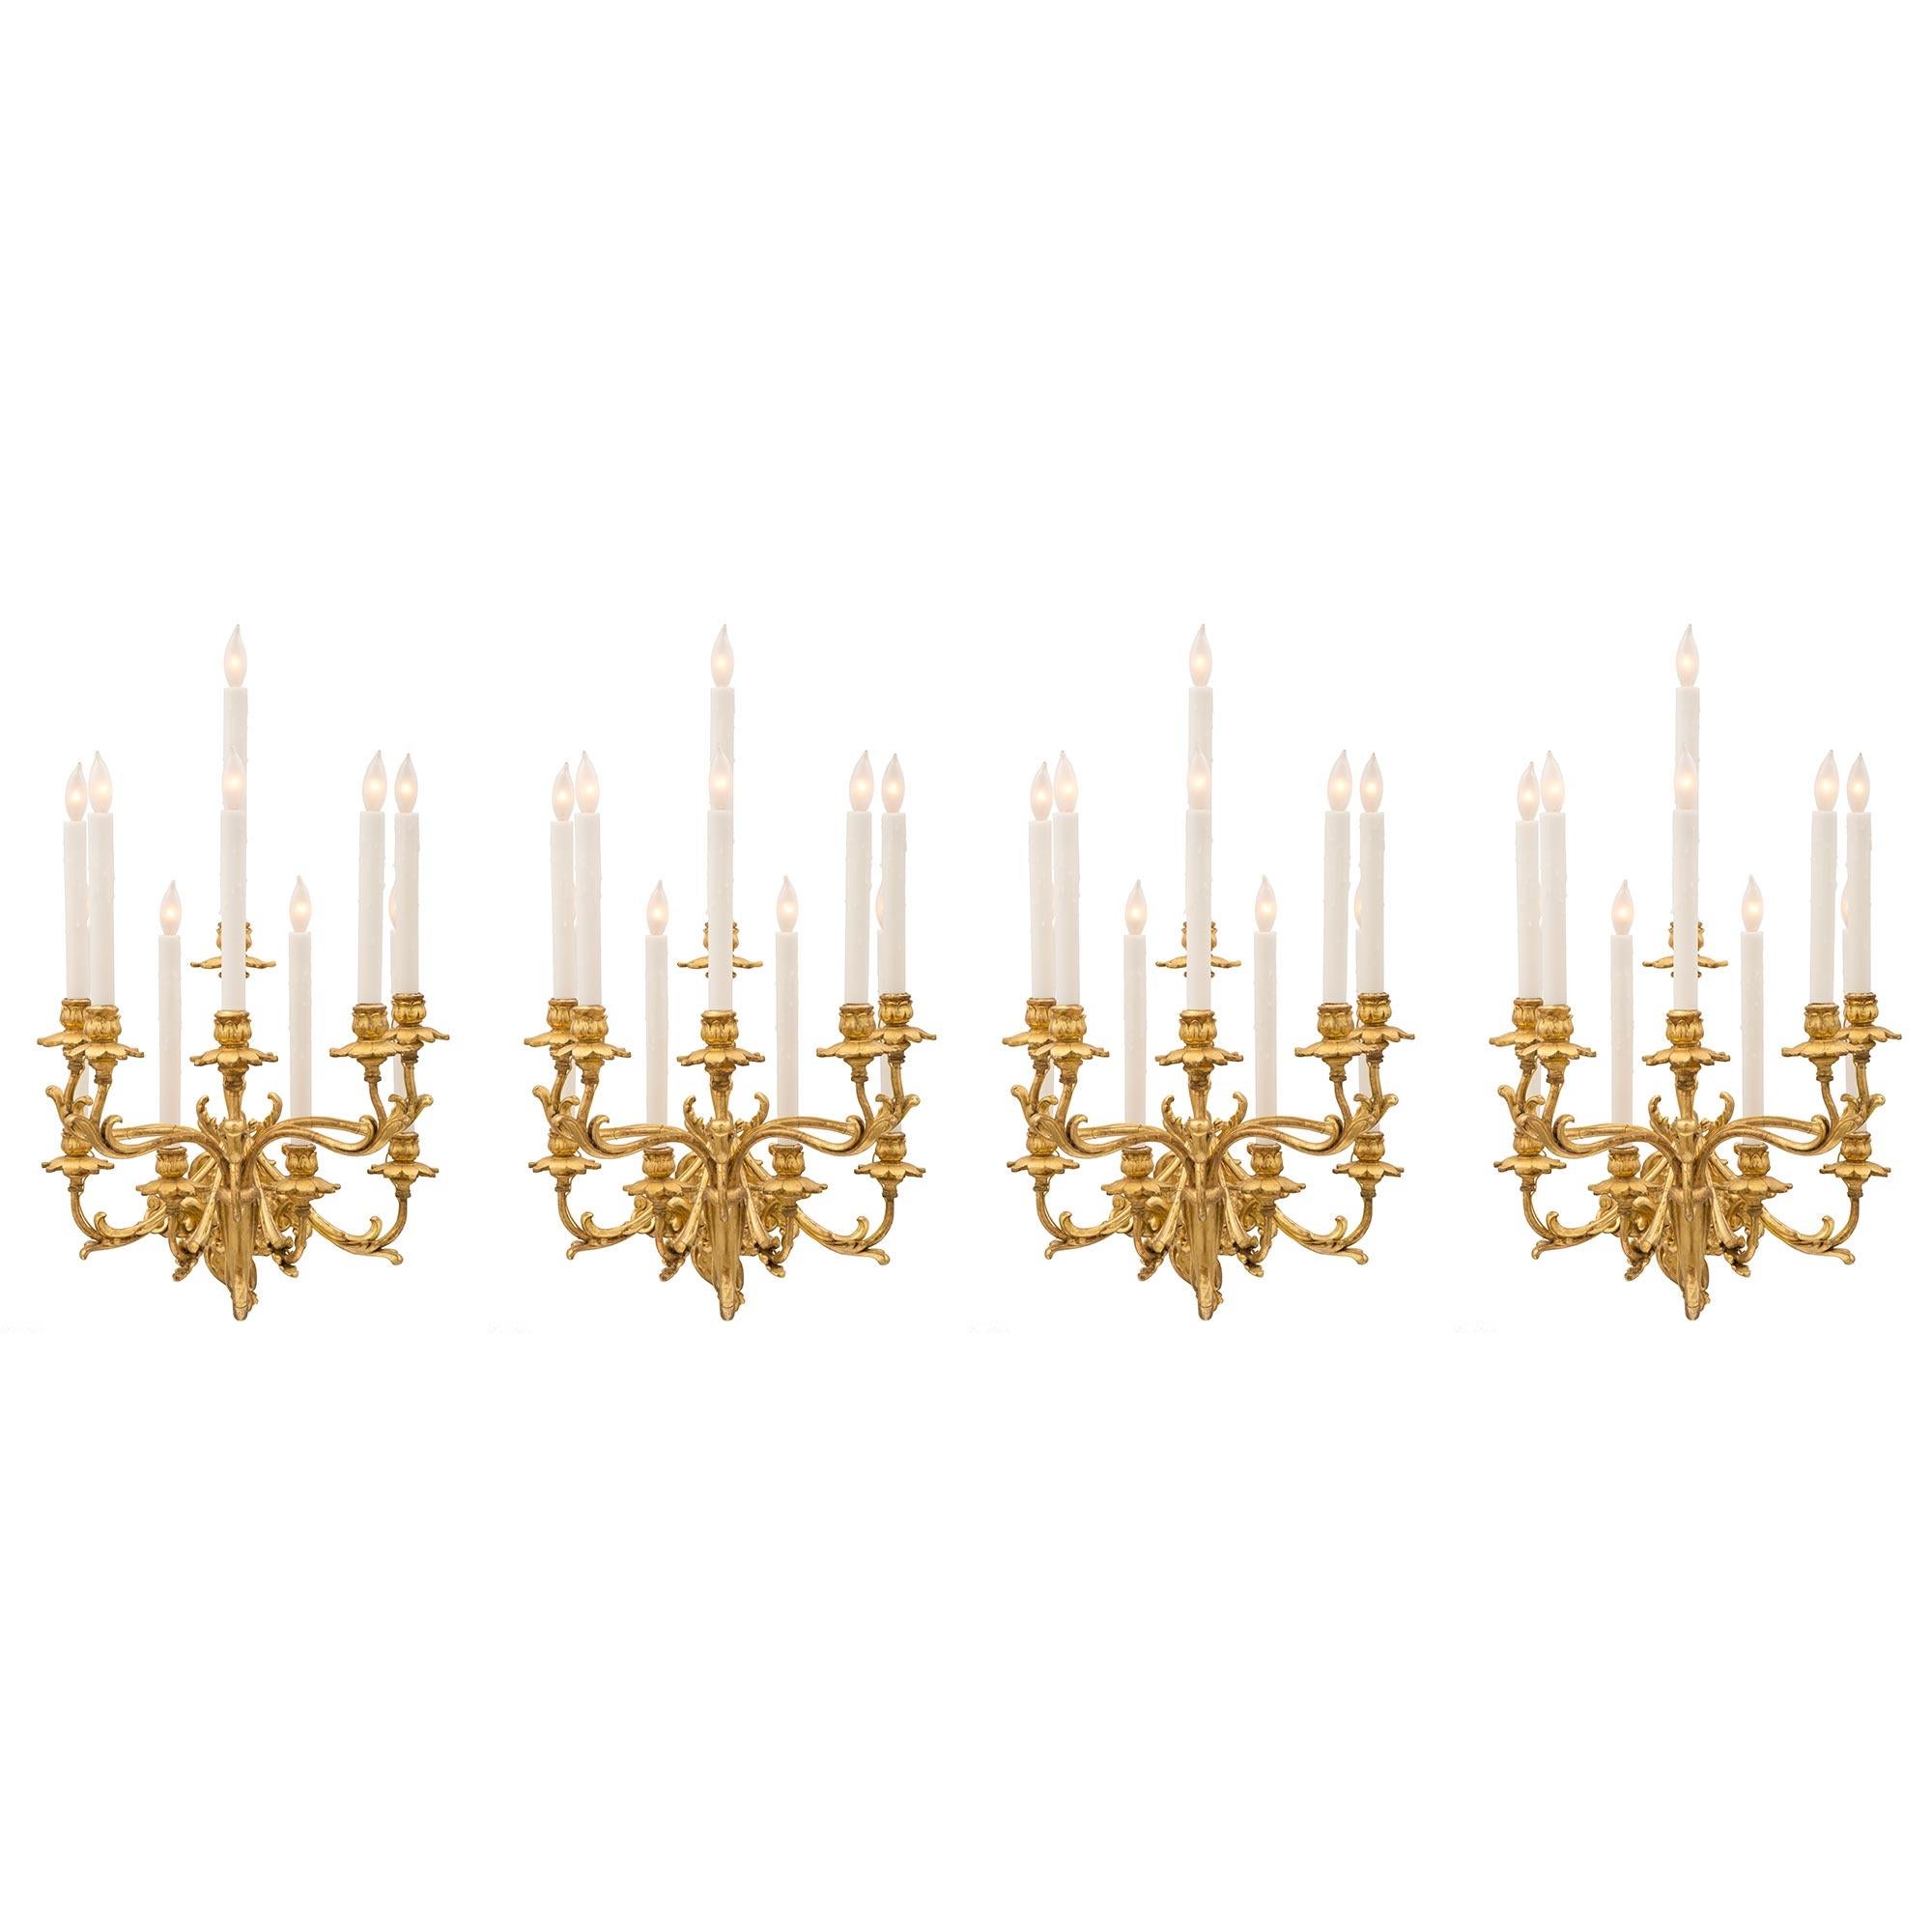 Eine beeindruckende und monumentale Reihe von vier italienischen Rokoko-Leuchten aus vergoldetem Holz und vergoldetem Metall aus dem frühen 19. Jede zehnarmige Leuchte wird von einer schönen verschnörkelten, mit Blättern verzierten Rückenplatte